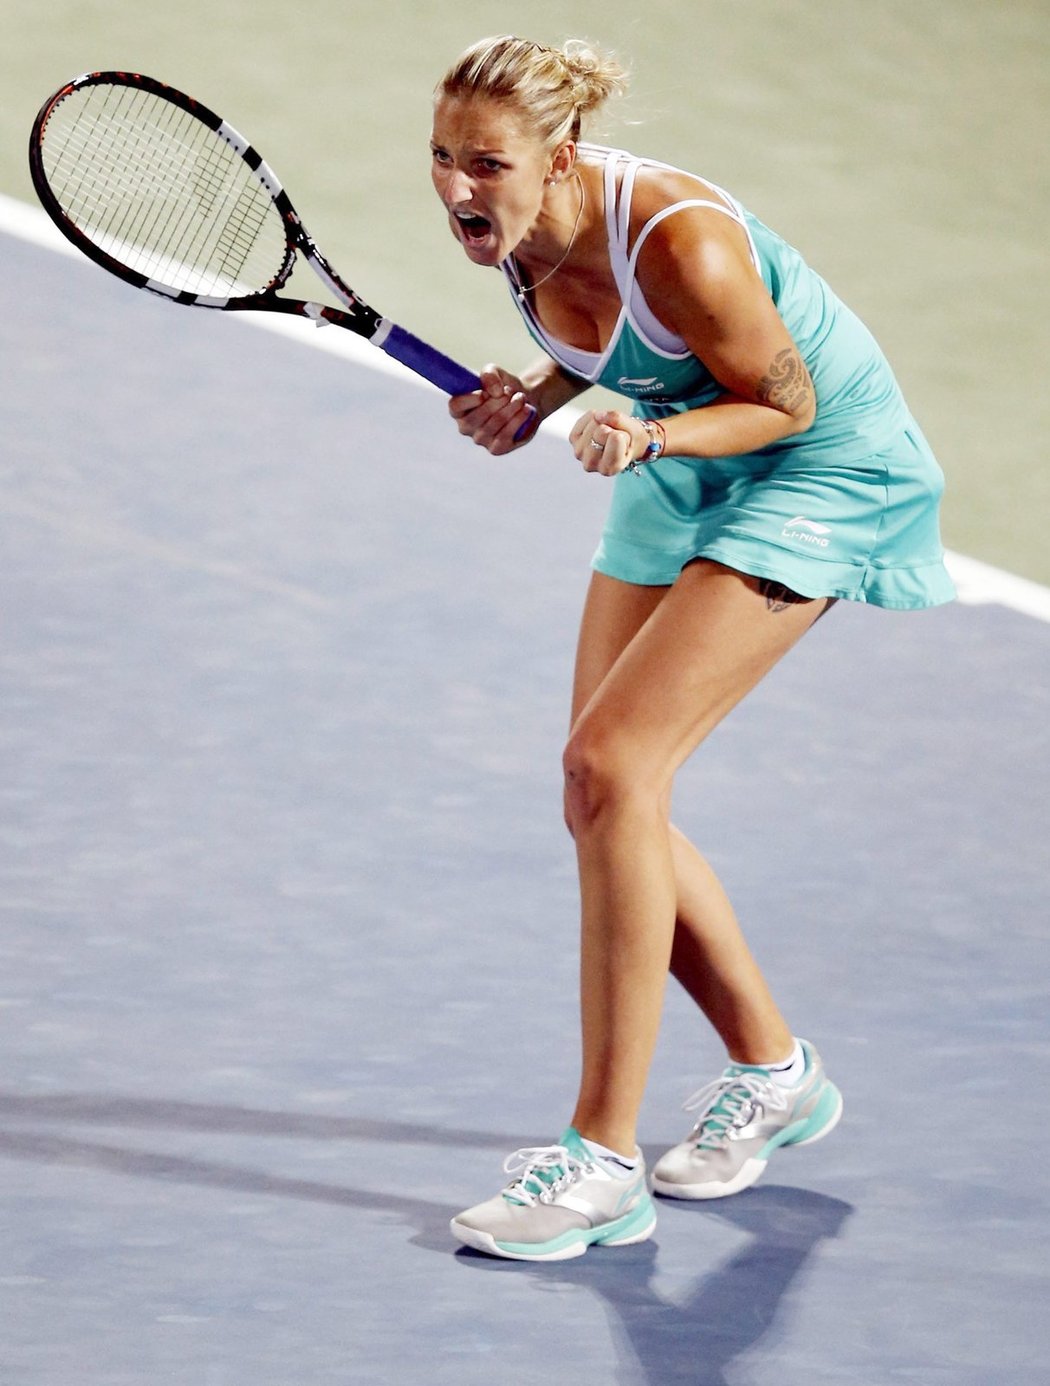 Česká tenistka Karolína Plíšková po postupu do svého osmého finále WTA v kariéře